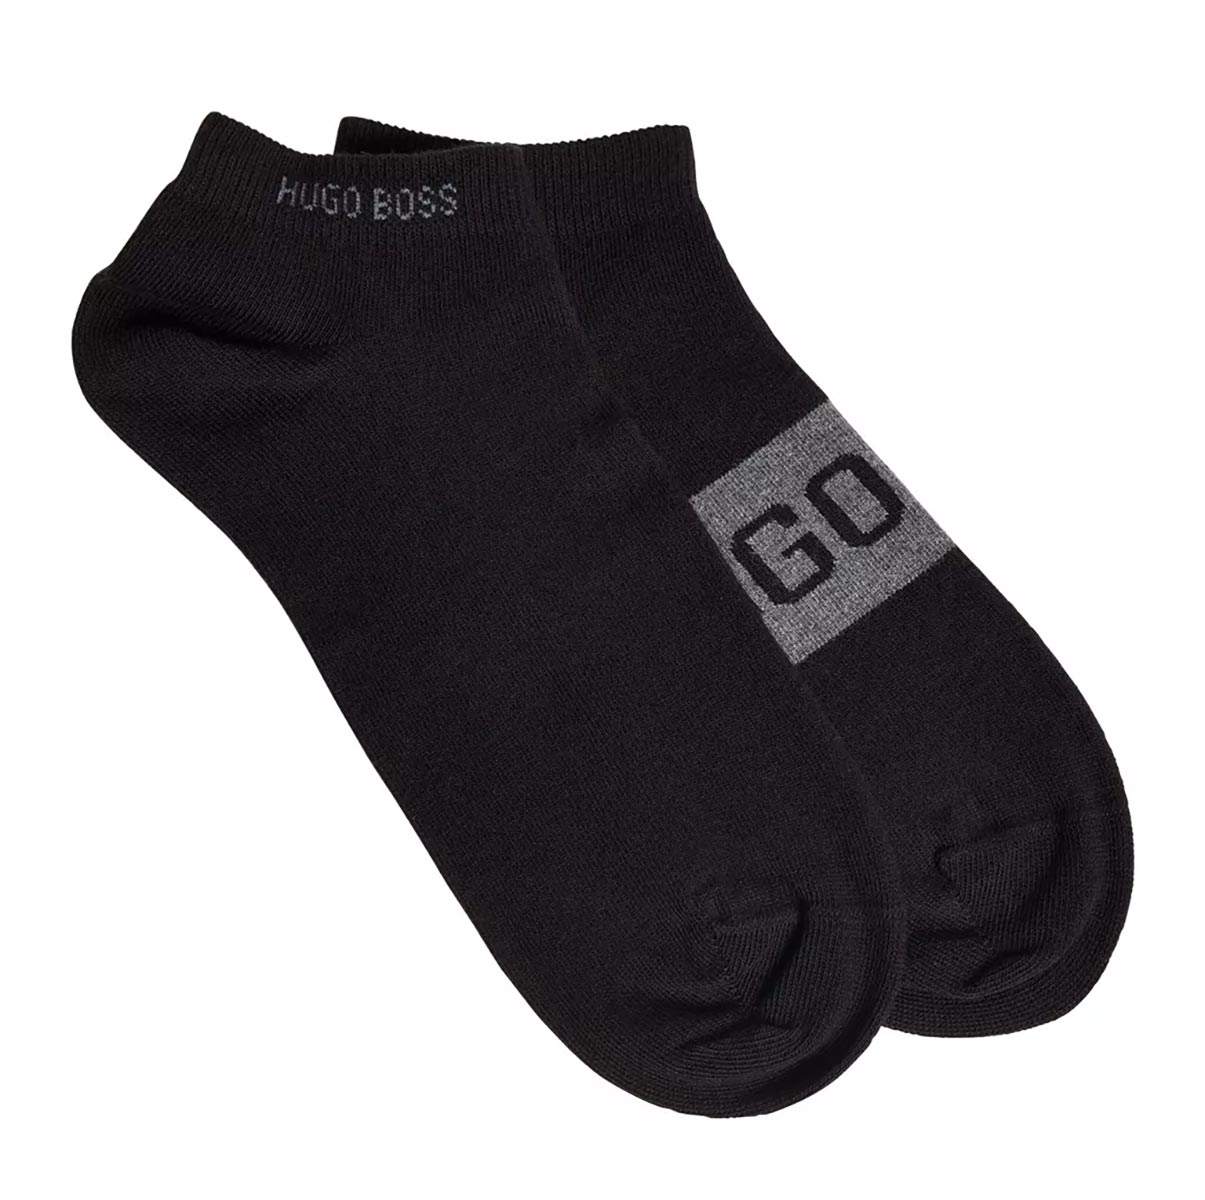 BOSS 2 Pack AS Logo Ankle Sock in Black